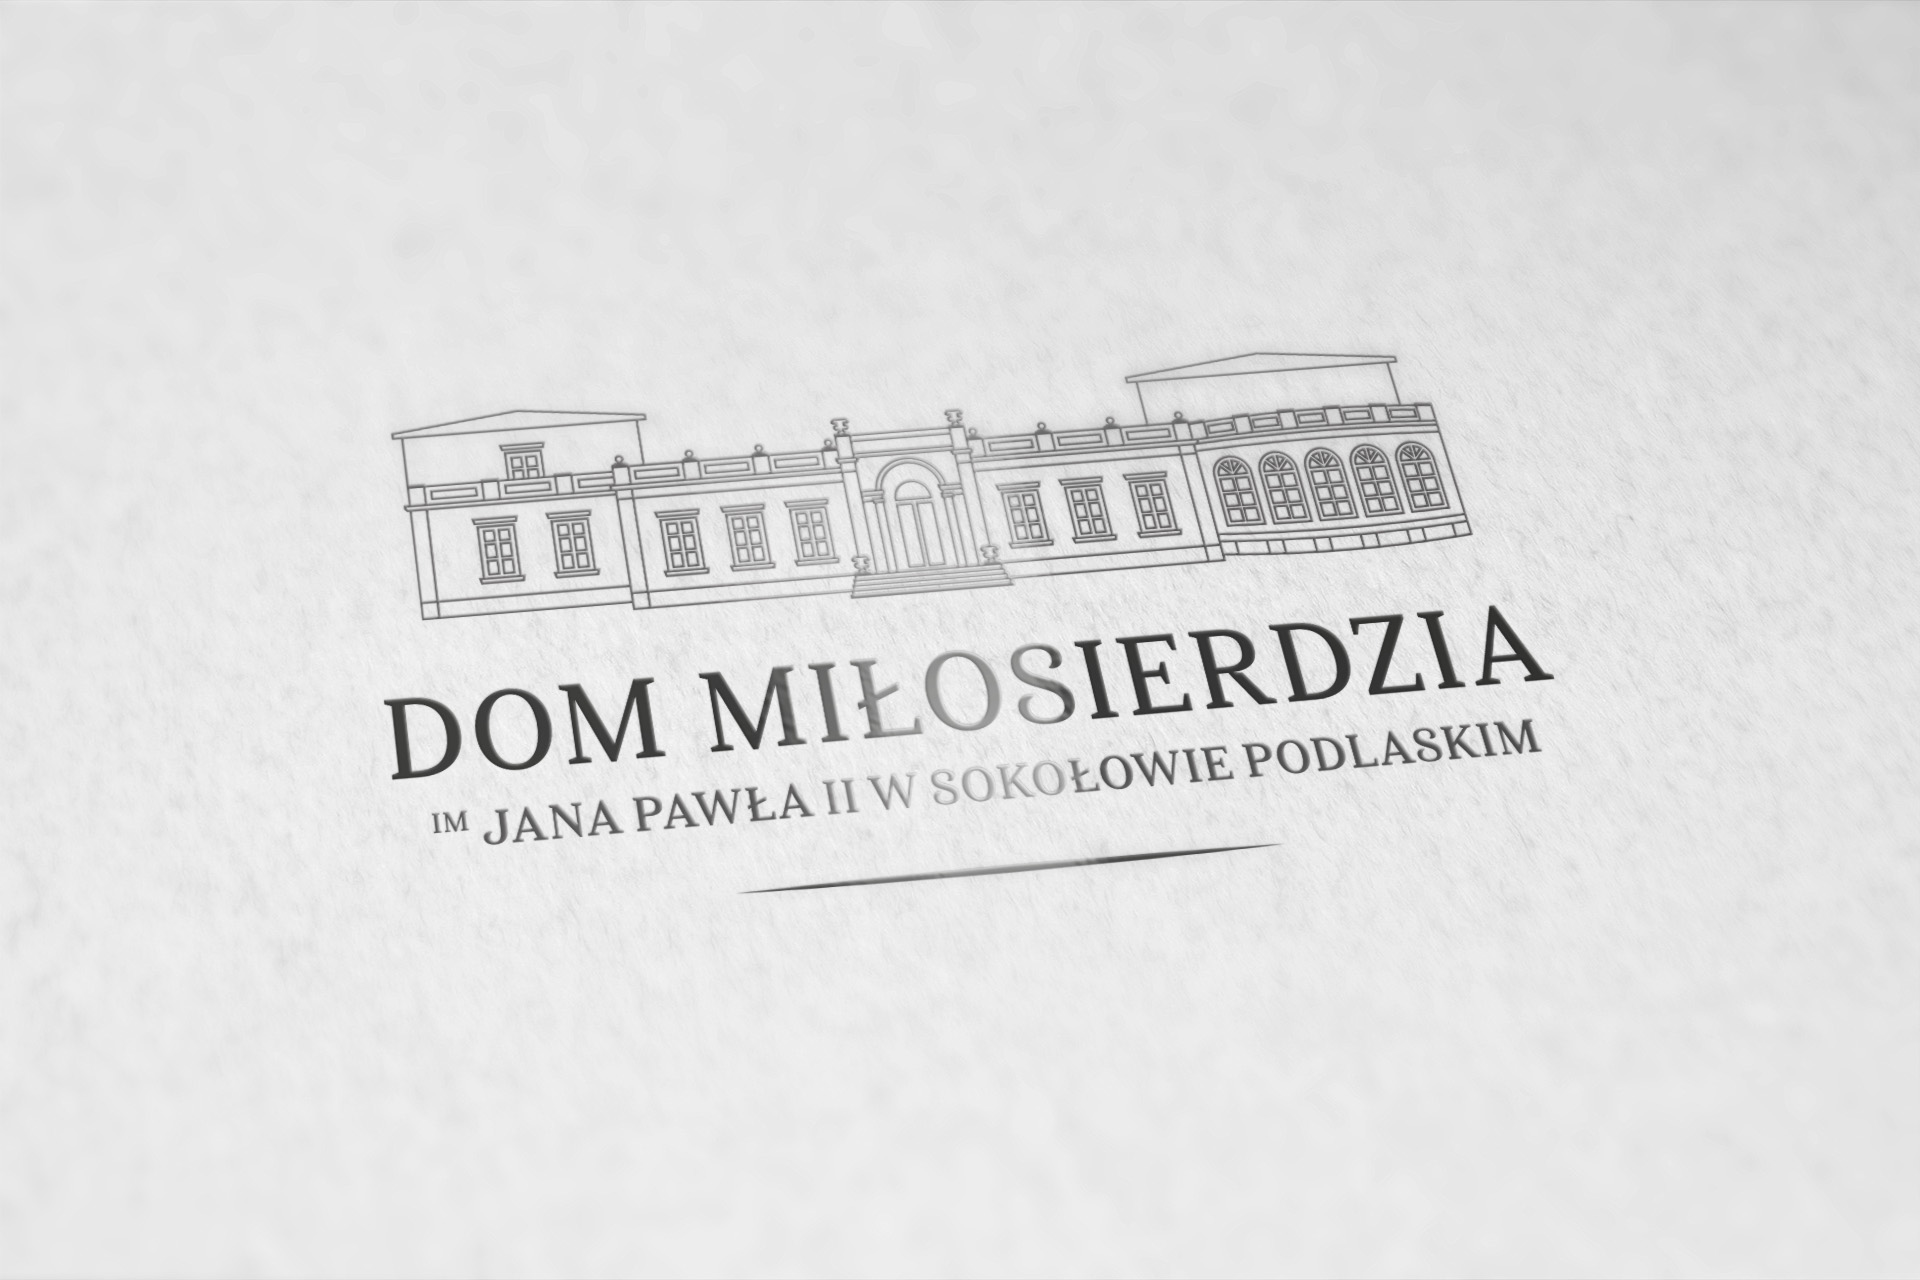 Dom Miłosierdzia im Jana Pawała II w Sokołowie Podlaskim, Logo